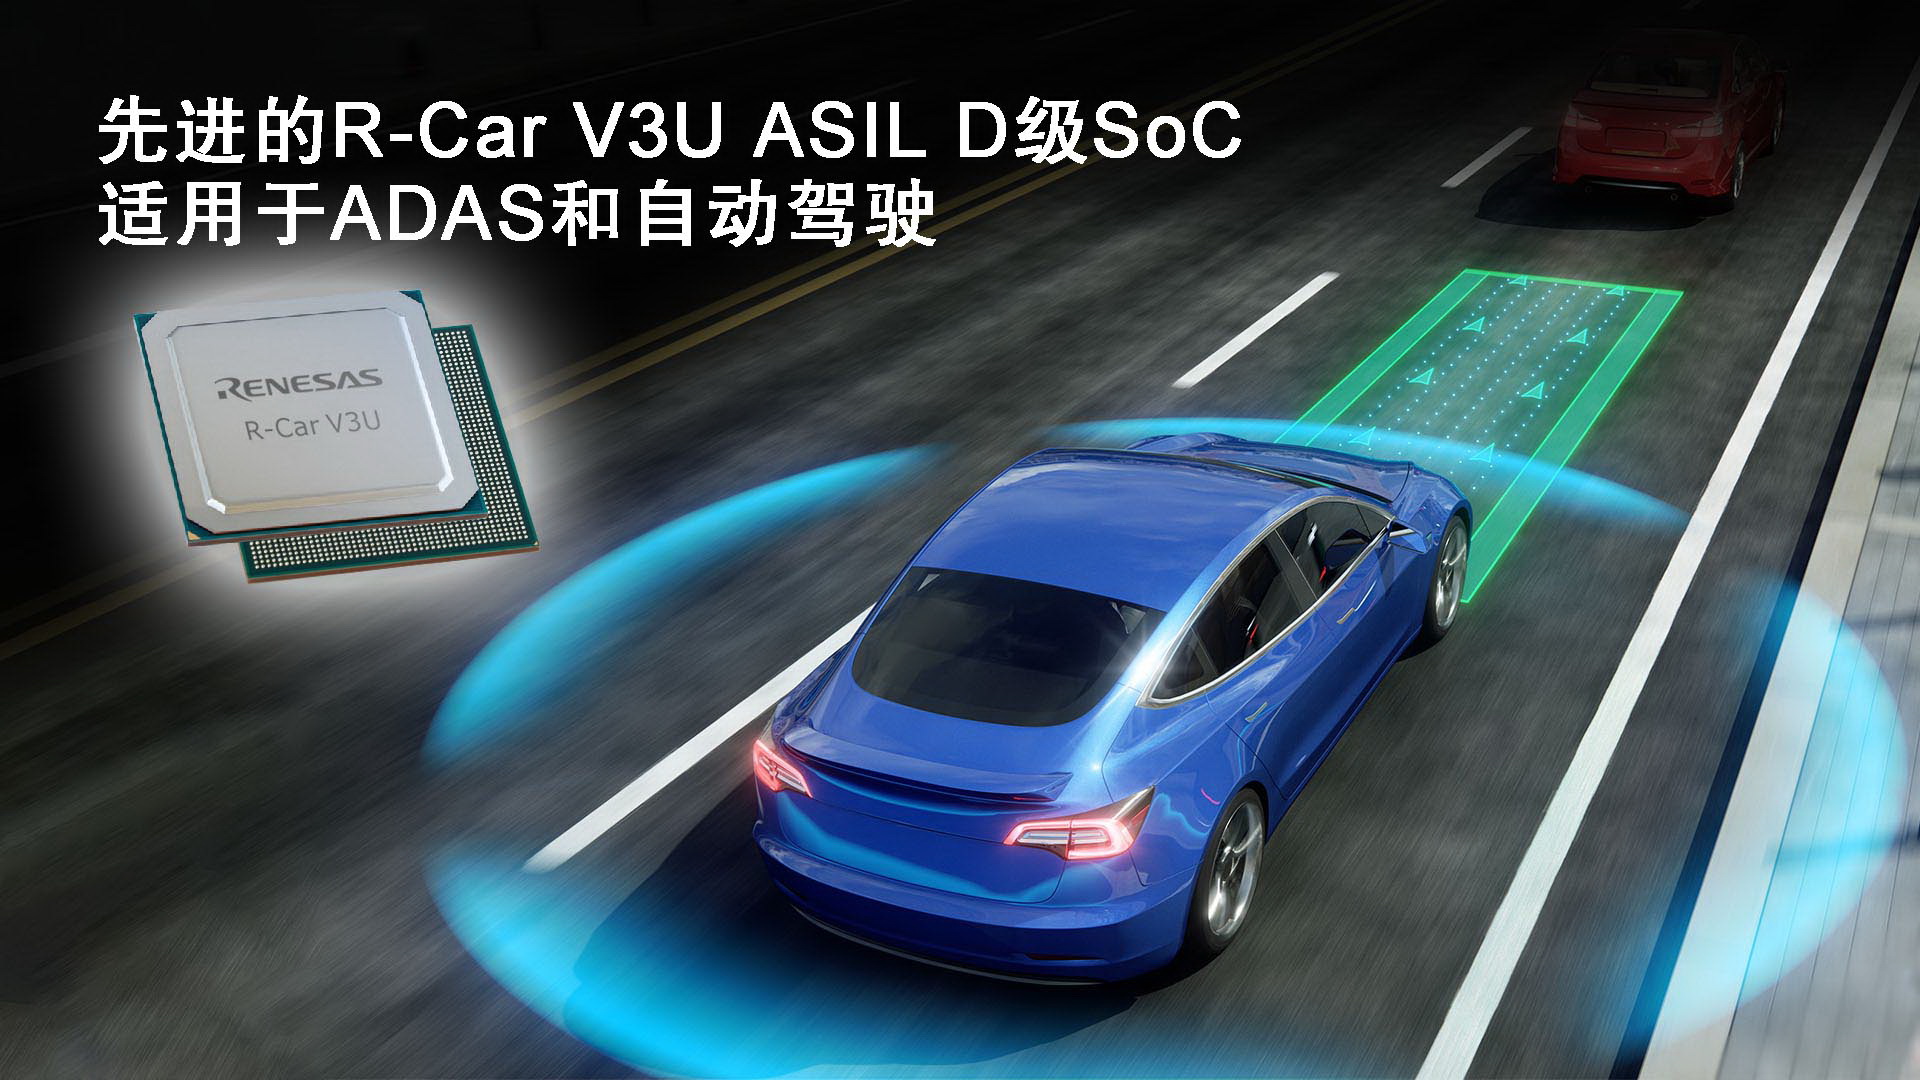 瑞萨电子加速ADAS和自动驾驶技术开发推出先进的R-Car V3U ASIL D级片上系统